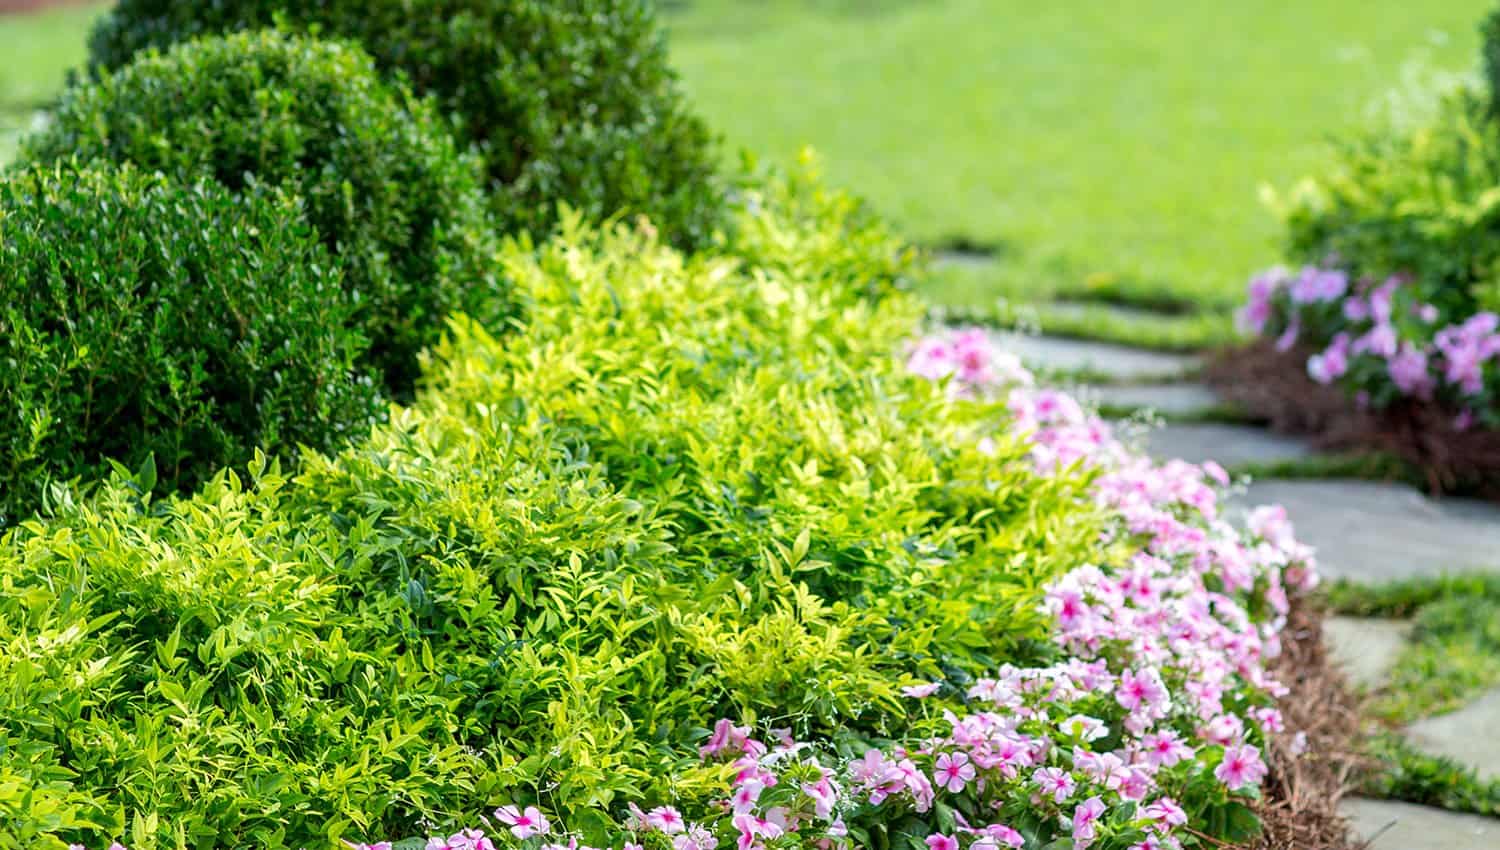 入口的花园床特色柠爱游戏在线登入檬-柠檬南迪纳，黄杨木和粉红色的一年生植物围绕石板步行道